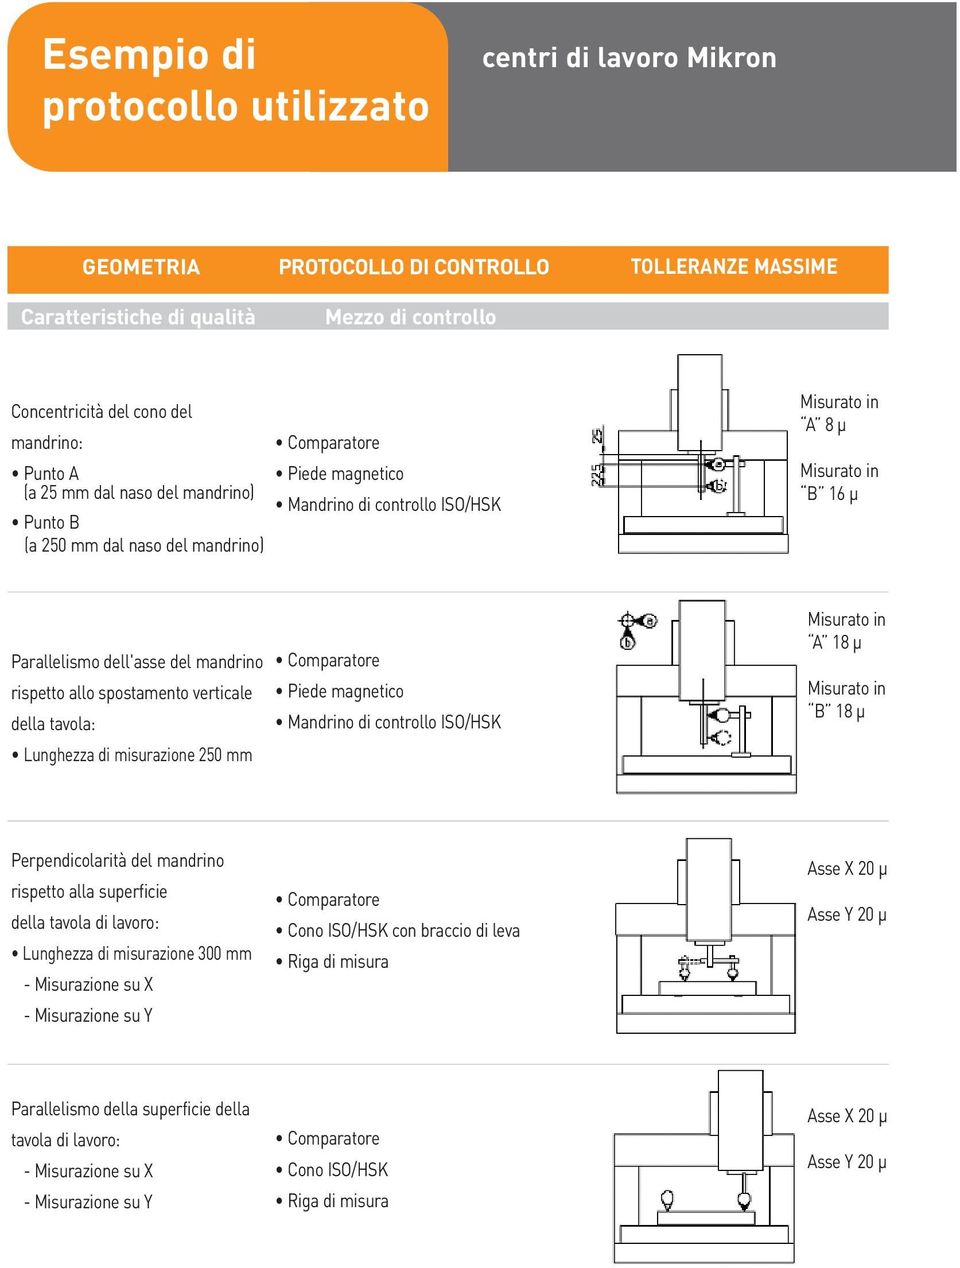 del mandrino rispetto allo spostamento verticale della tavola: Lunghezza di misurazione 250 mm Comparatore Piede magnetico Mandrino di controllo ISO/HSK Misurato in A 18 μ Misurato in B 18 μ